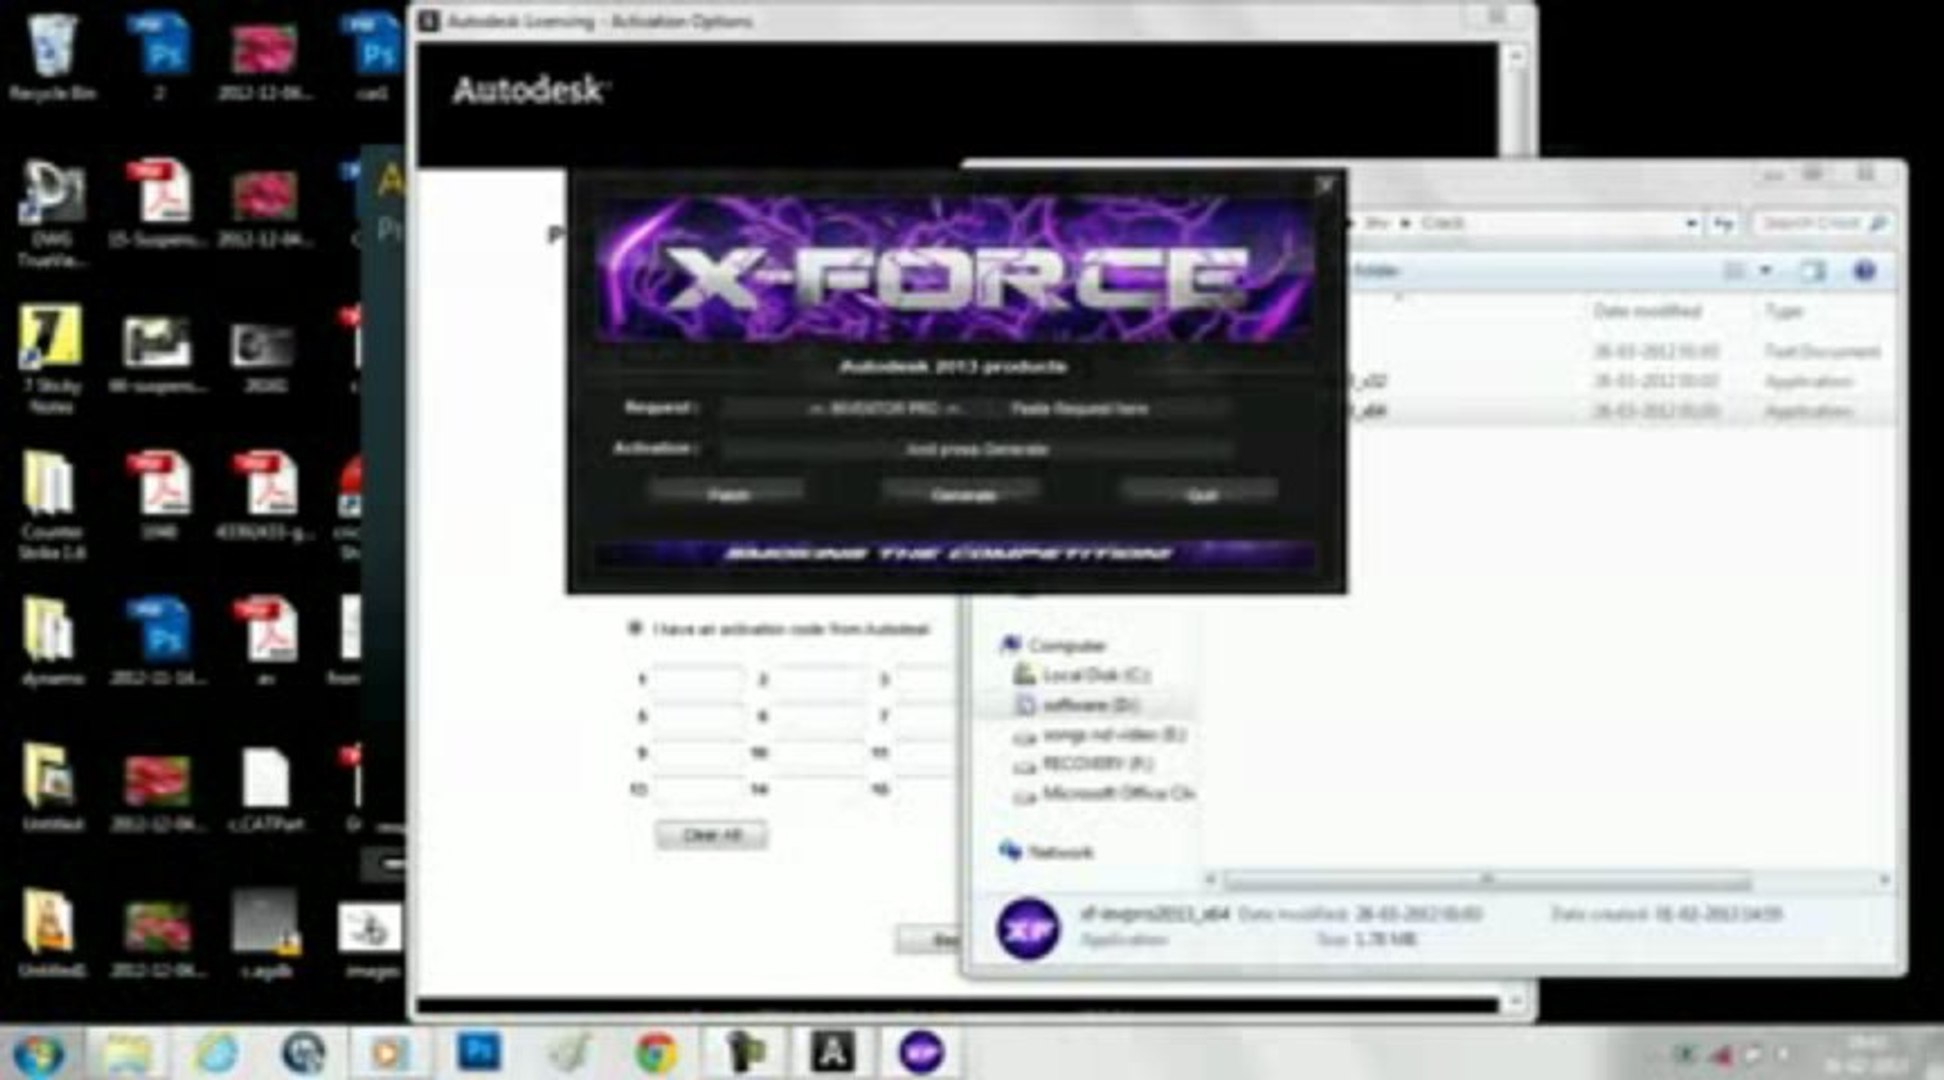 xf adsk2013 x64 keygen download